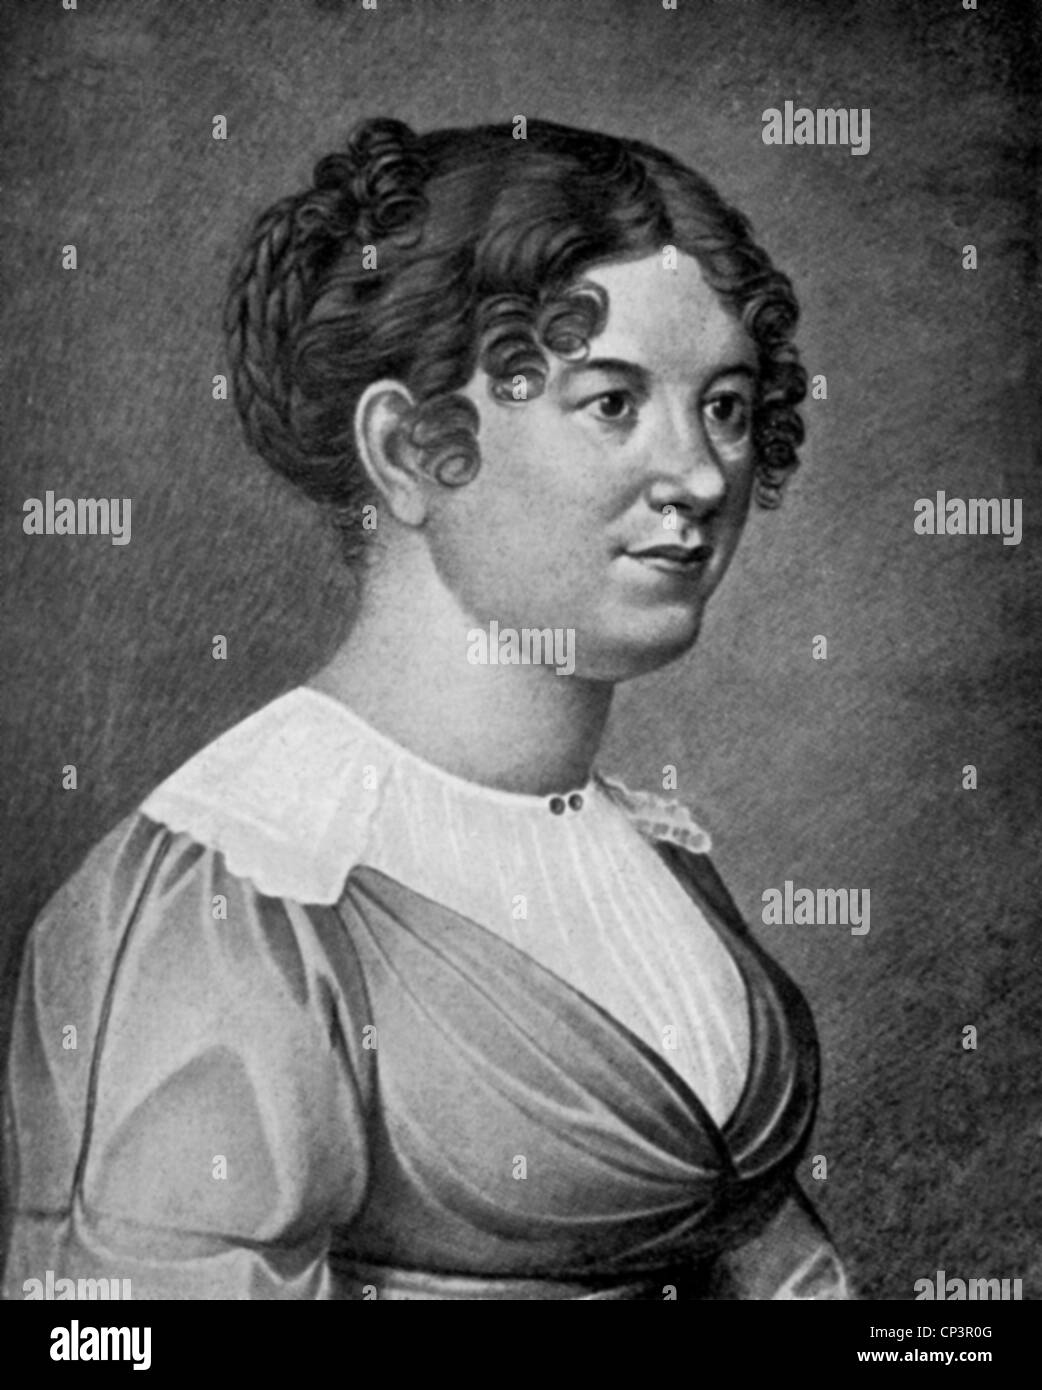 Willemer, Marianne von, 20.11.1784 - 6.12.1860, Austrian actress, dancer, poet, friend of Johann Wolfgang von Goethe, portrait, after a chalk drawing from 1819, Stock Photo